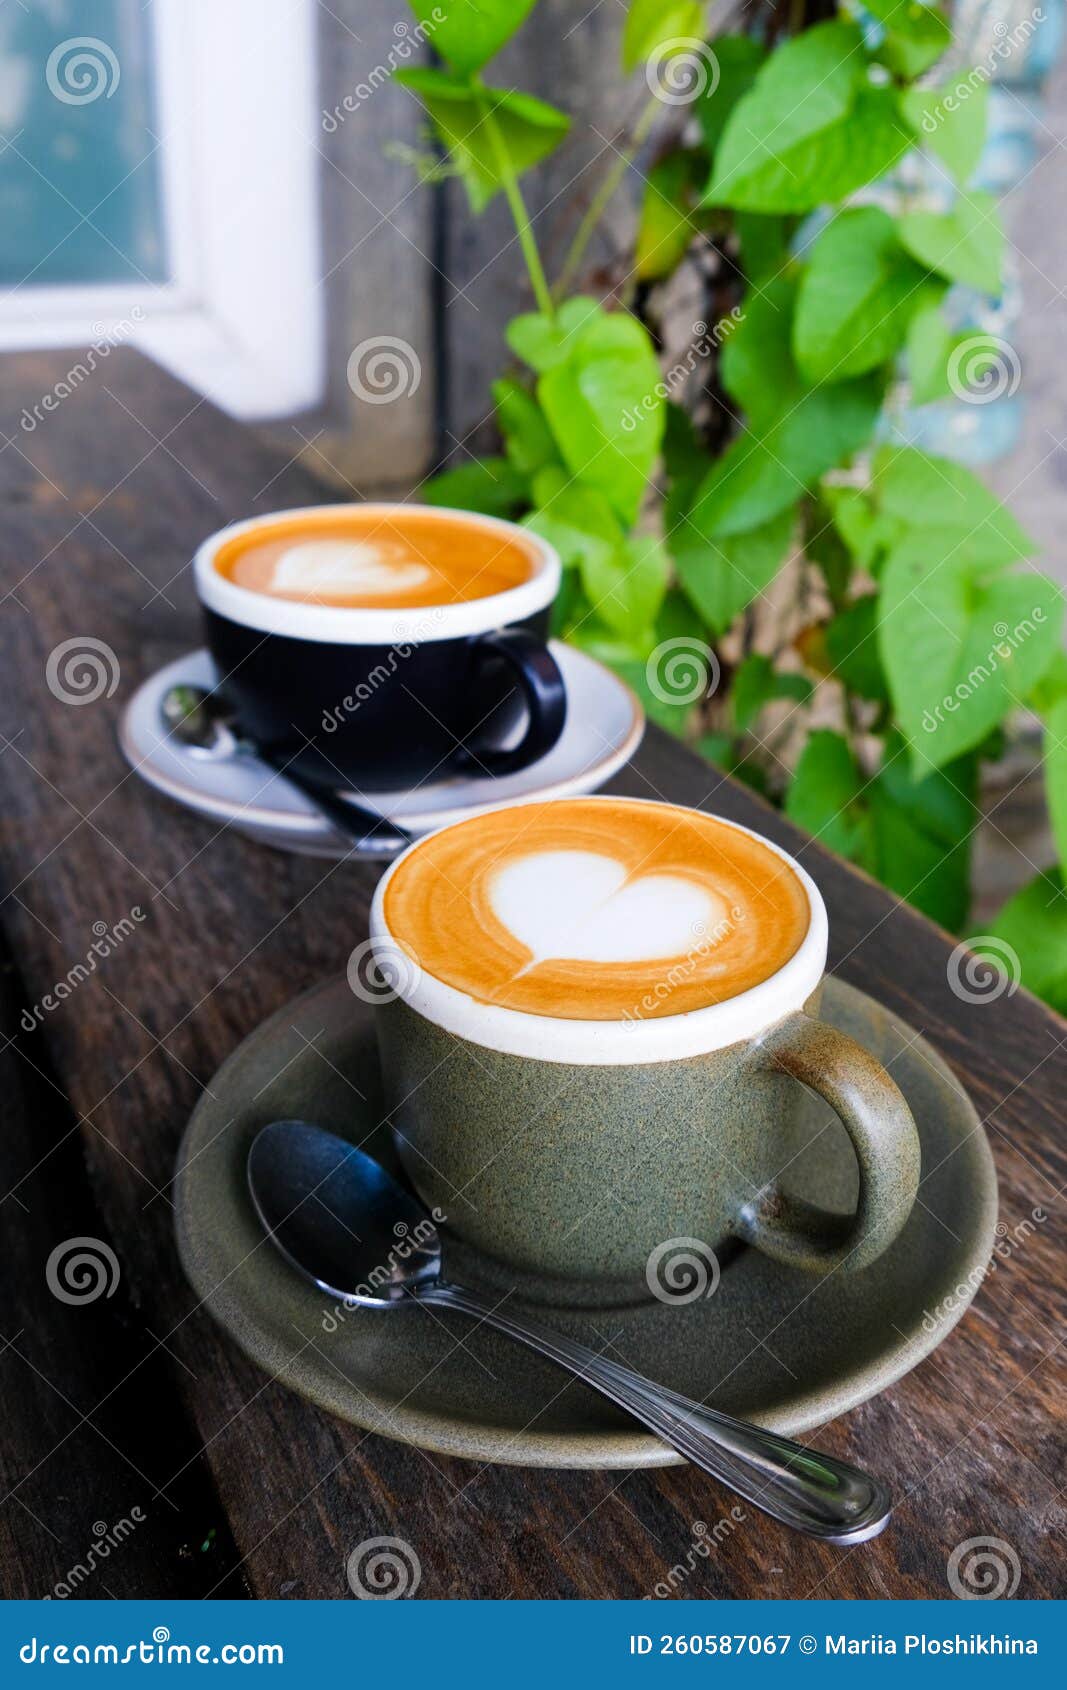 https://thumbs.dreamstime.com/z/dos-tazas-de-caf%C3%A9-sobre-un-fondo-madera-con-bonito-bar-latte-bello-arte-lata-naturaleza-verde-260587067.jpg